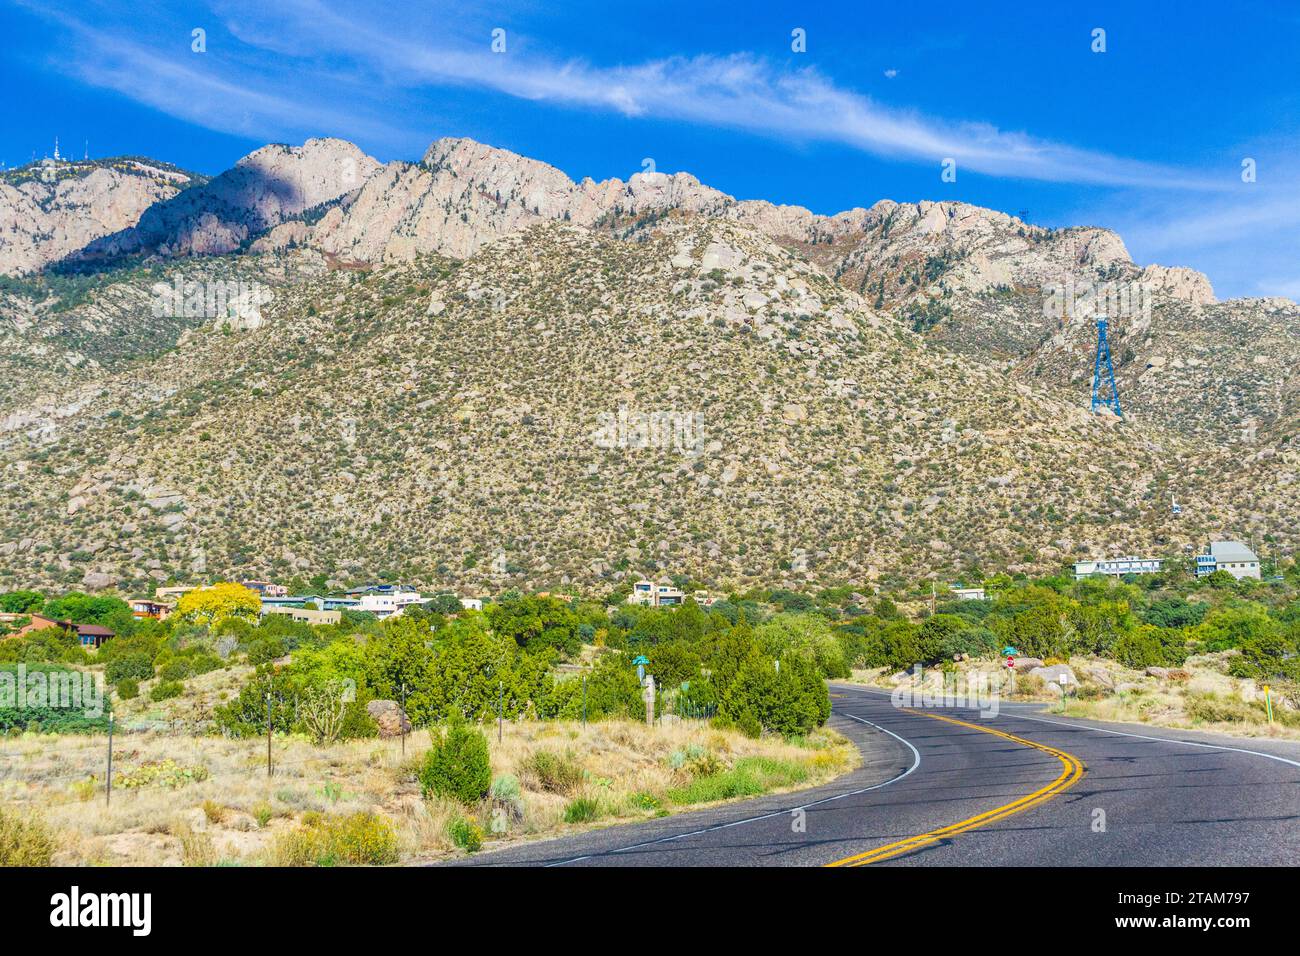 Albuquerque, New Mexico, road to tramway ride up to Sandia Peak ski area. Stock Photo